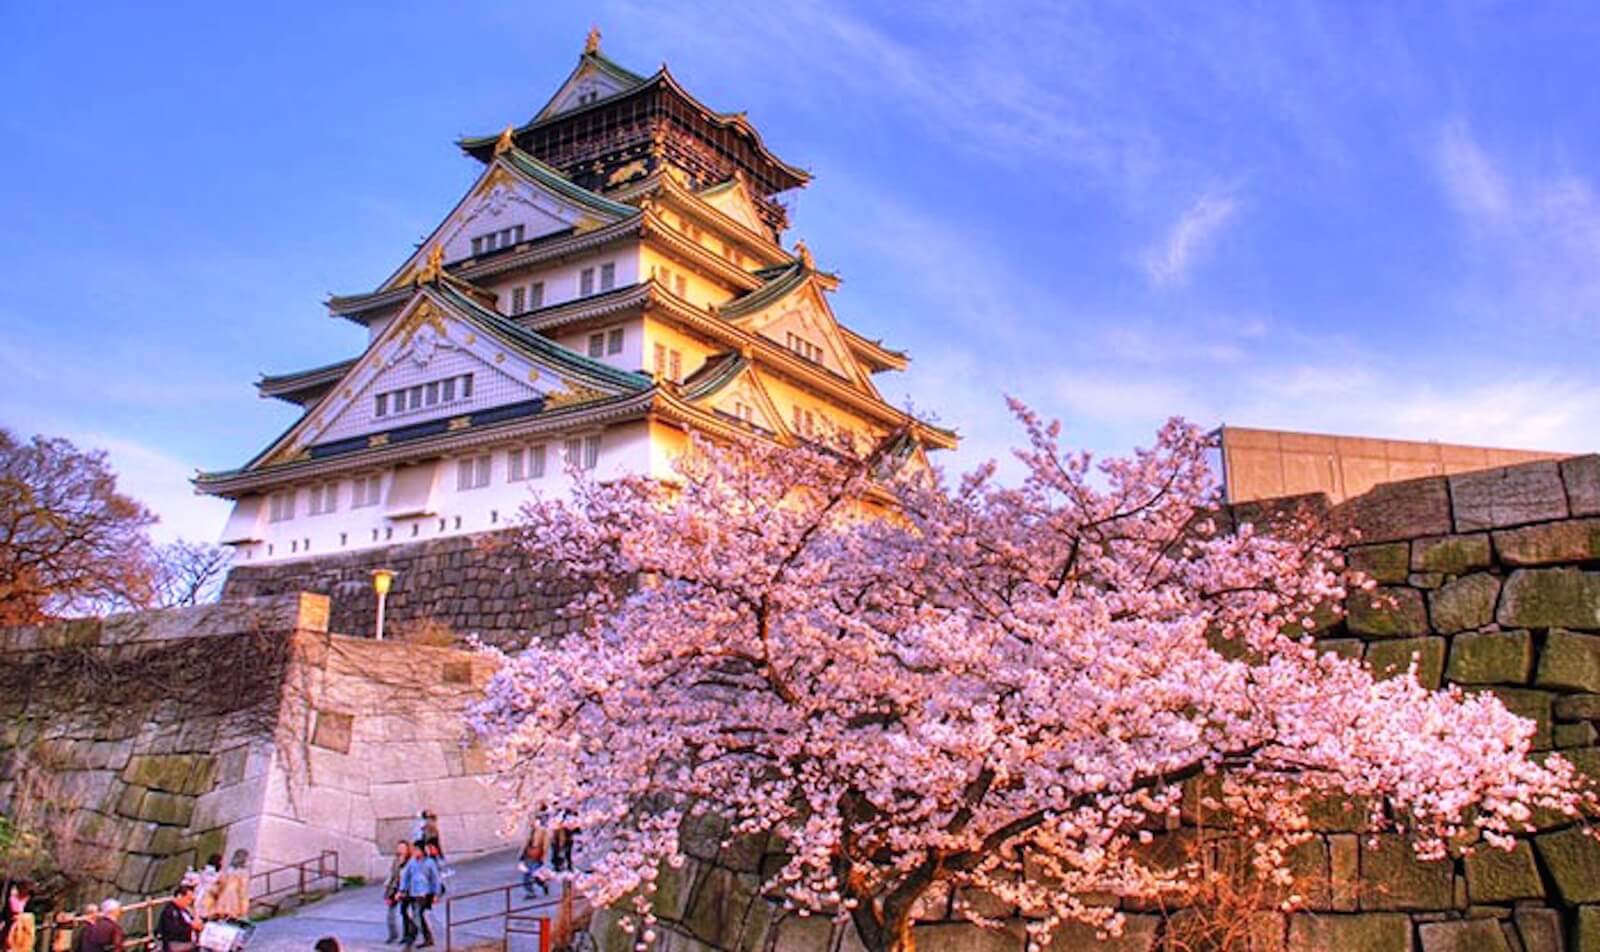 Kiến trúc tinh xảo nổi bật của lâu đài Osaka.